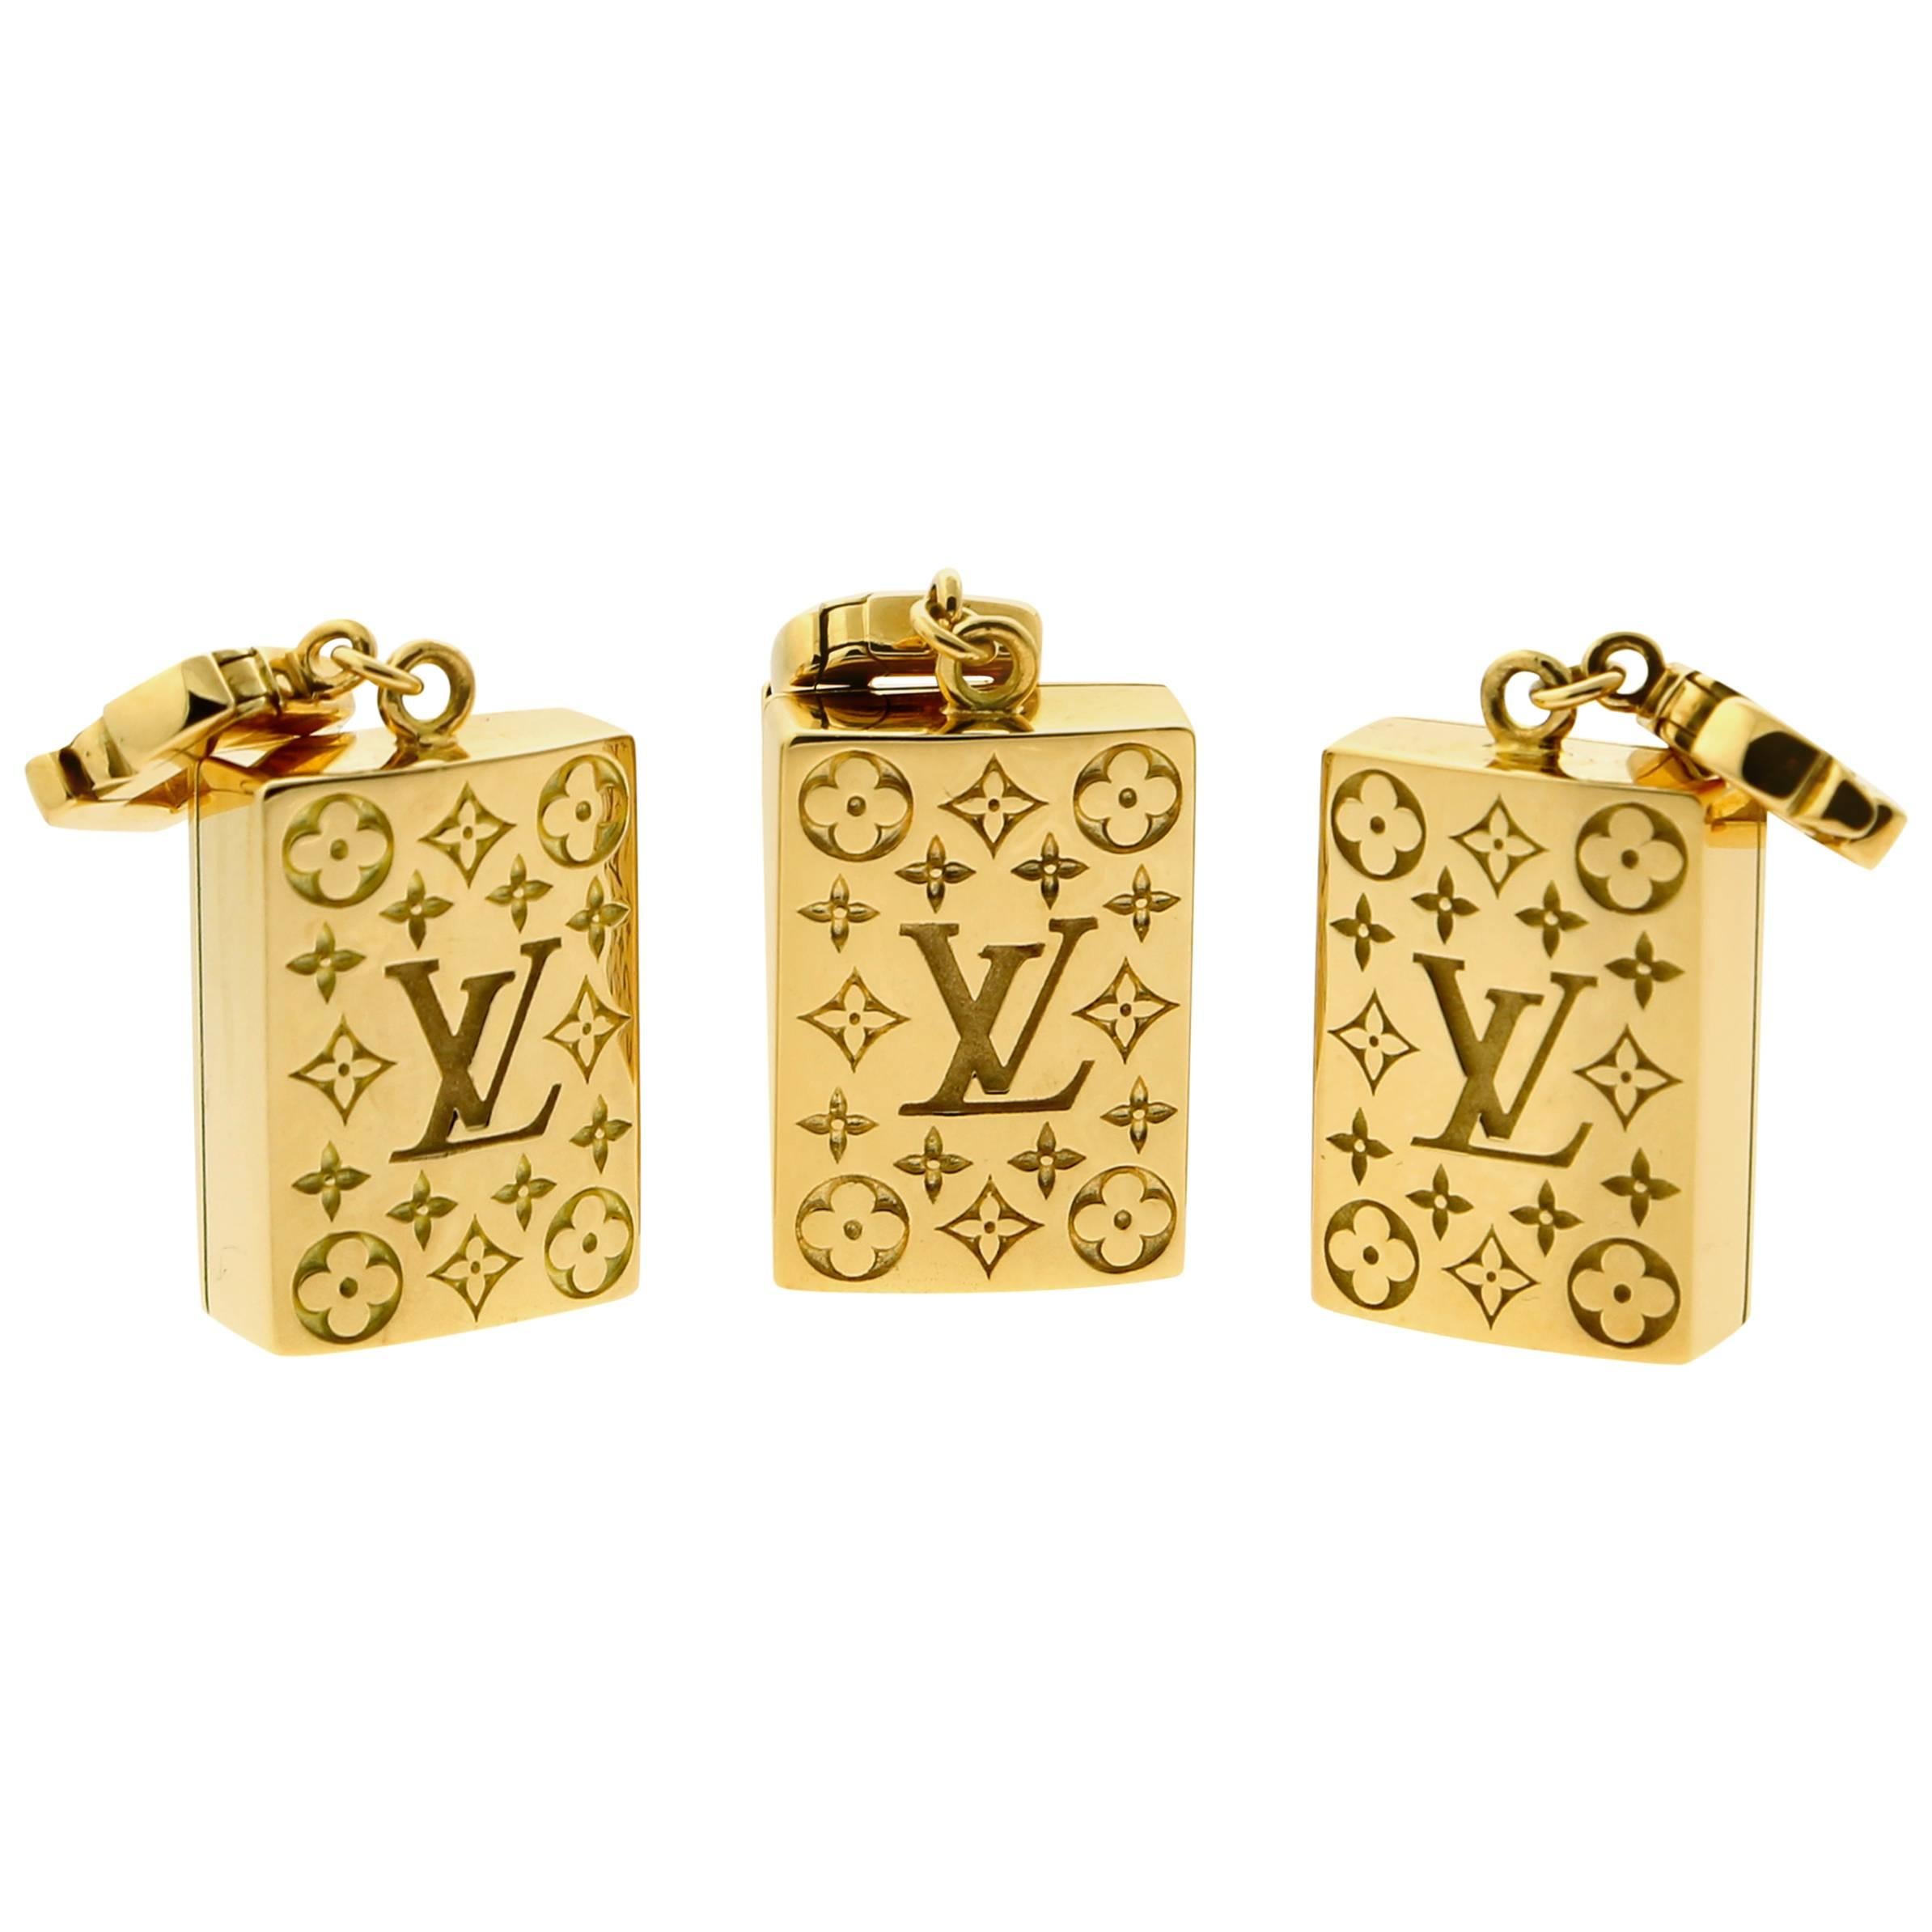 Louis Vuitton - Édition limitée Mahjong - Ensemble de carreaux en or